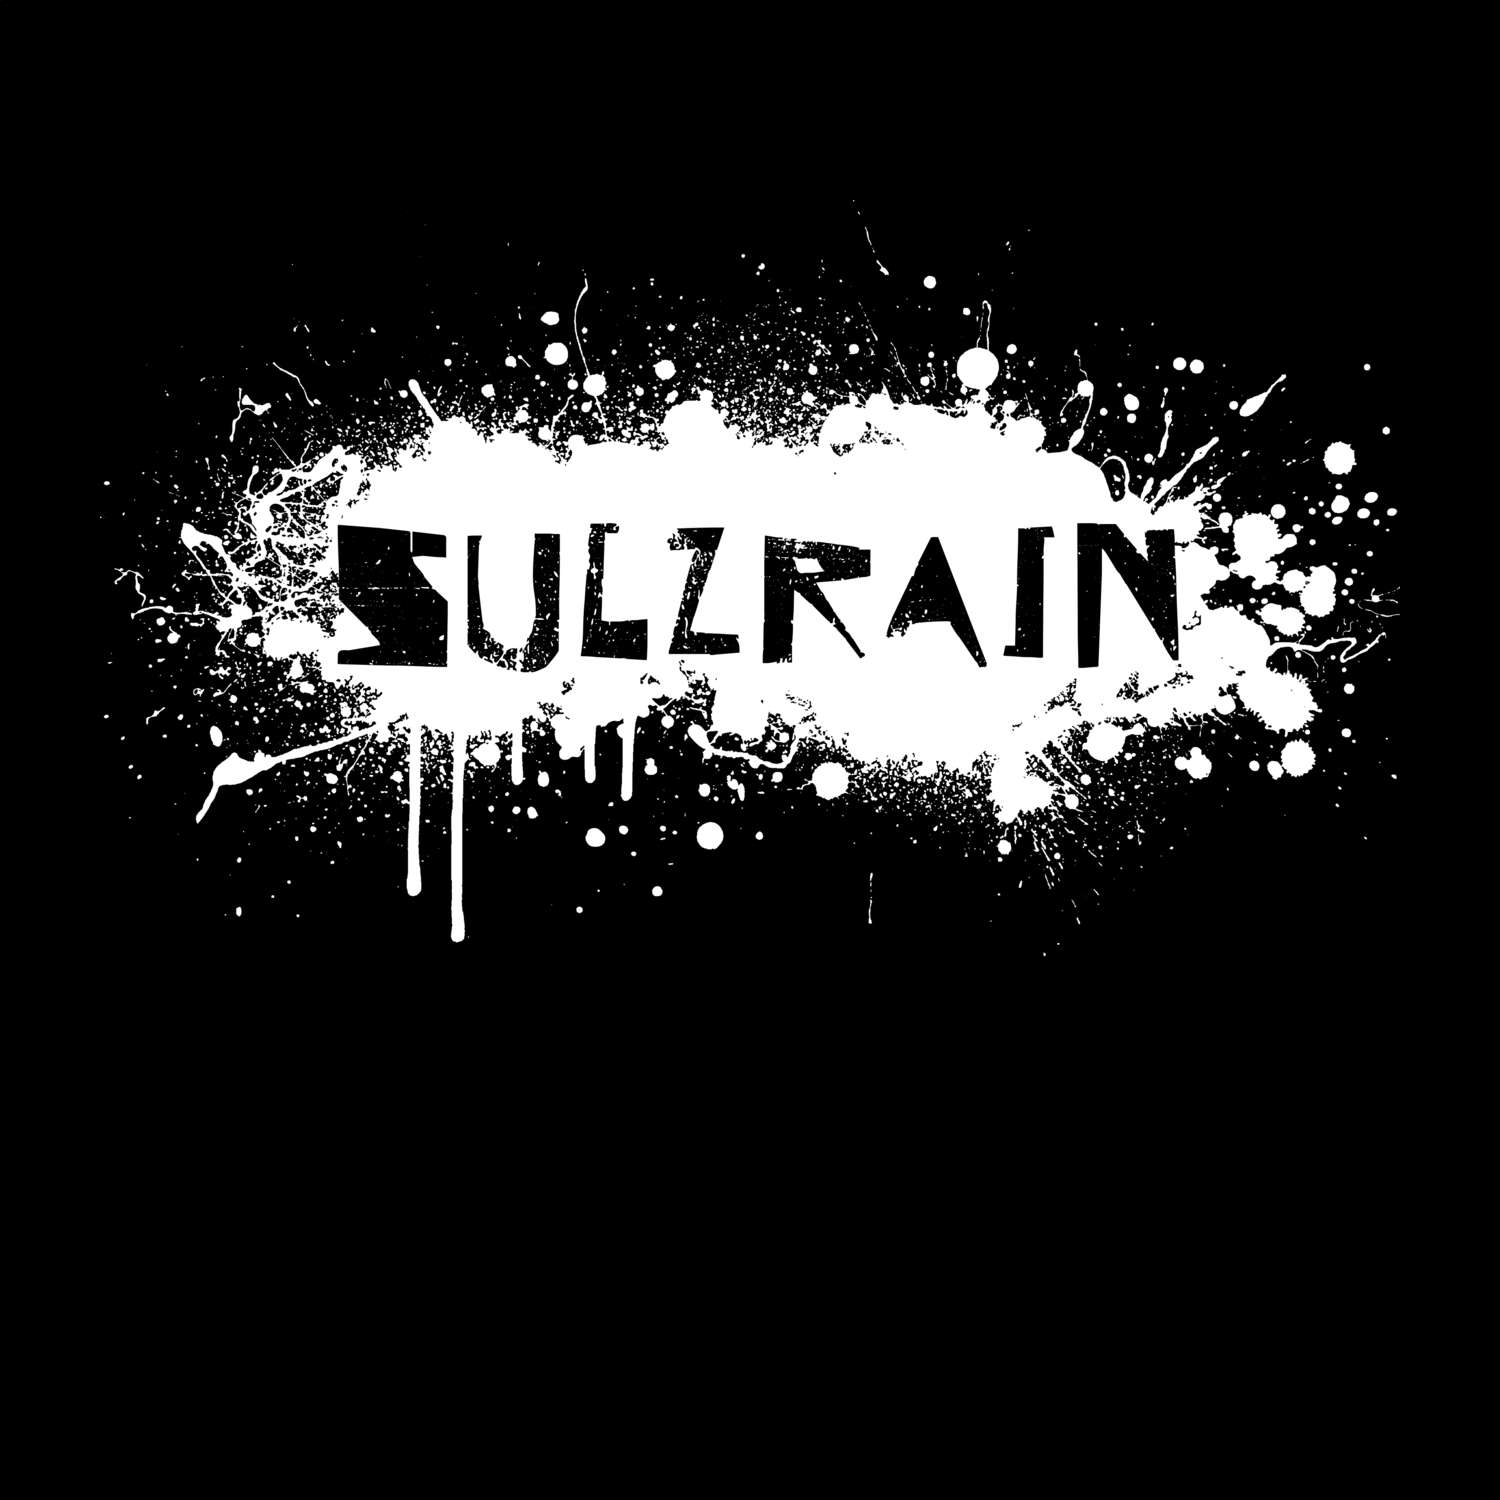 Sulzrain T-Shirt »Paint Splash Punk«